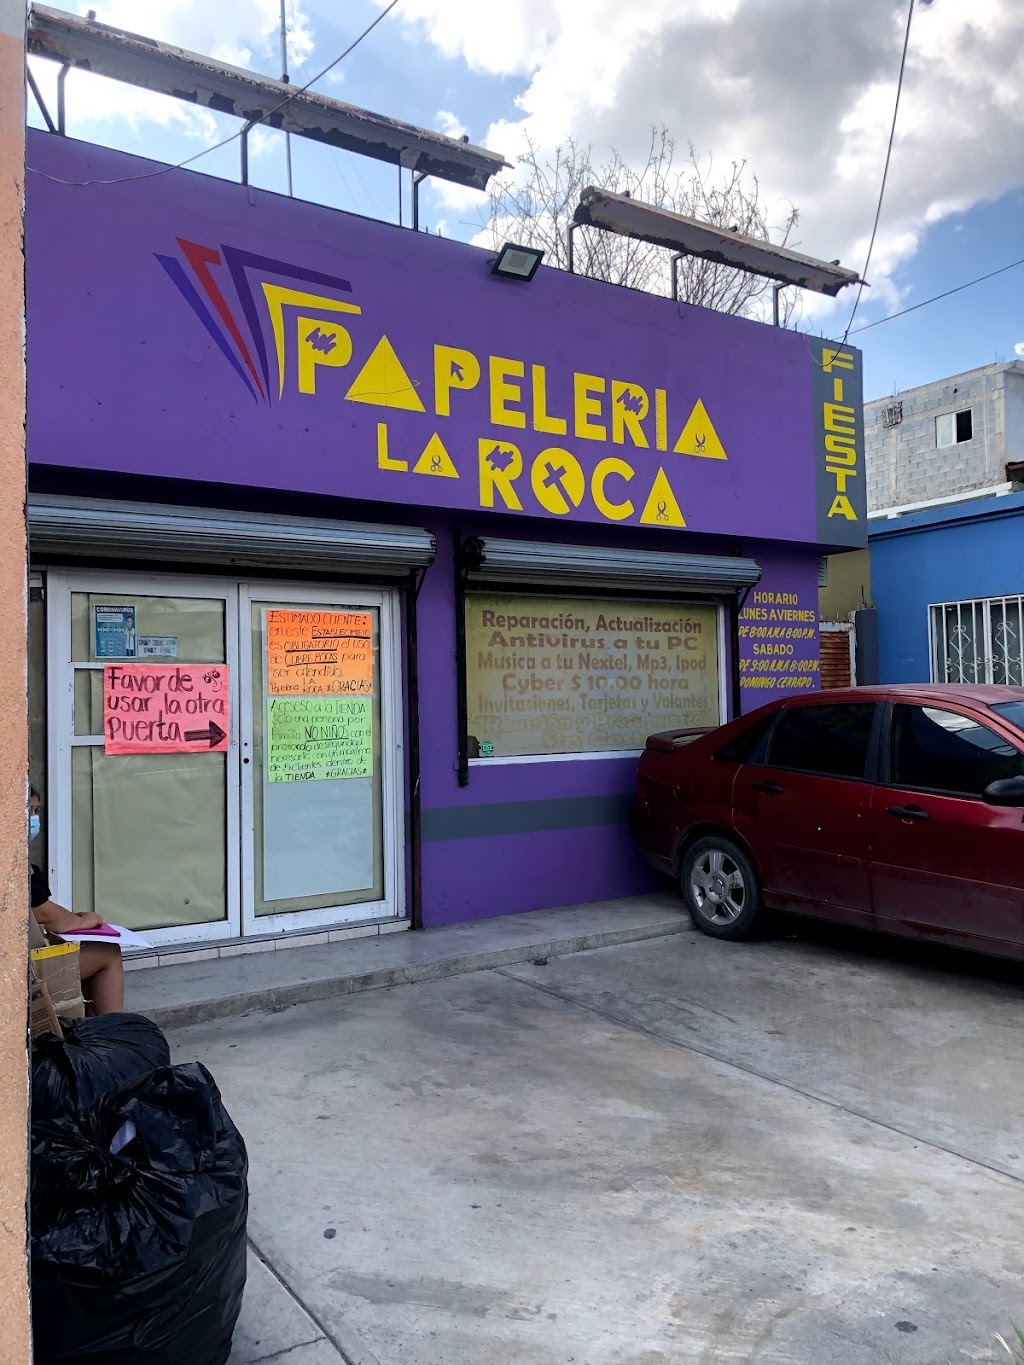 Papeleria La Roca | 88135, C. Eva Samano 1732, Unidad Nacional, 88135 Nuevo Laredo, Tamps., Mexico | Phone: 867 724 6838